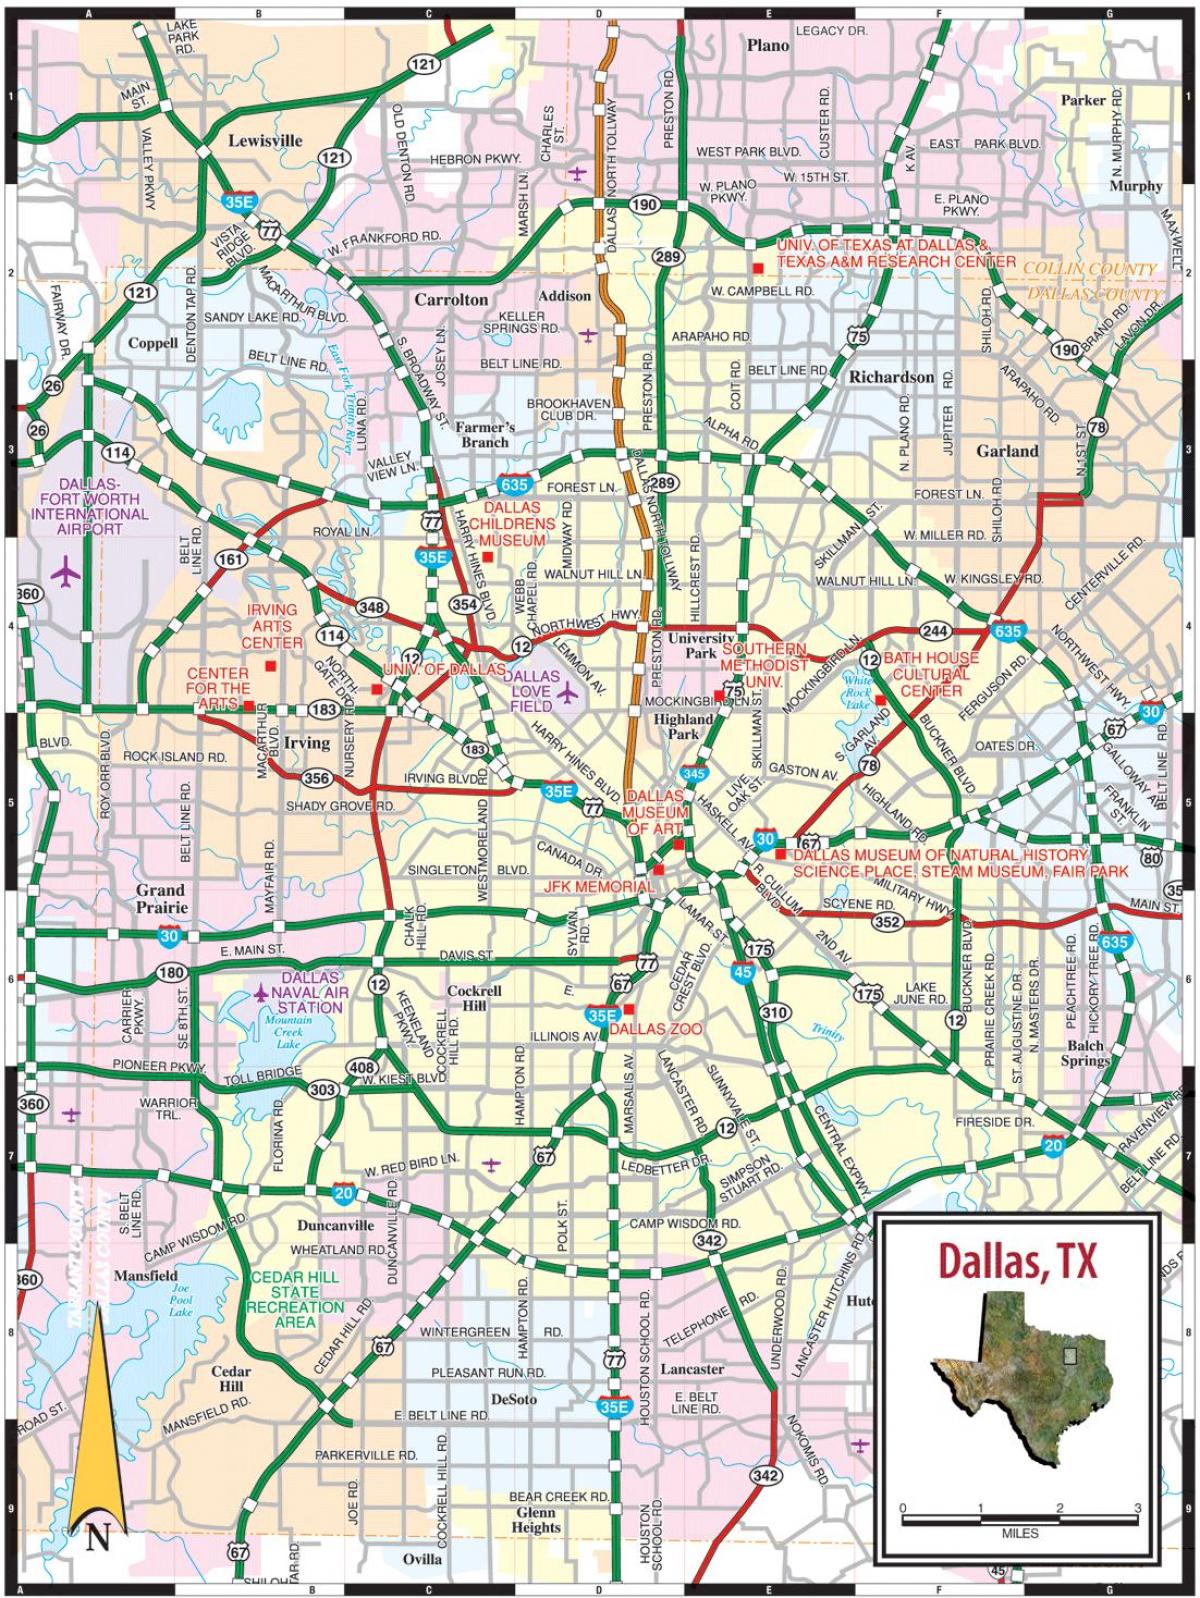 քաղաք: Dallas քարտեզի վրա